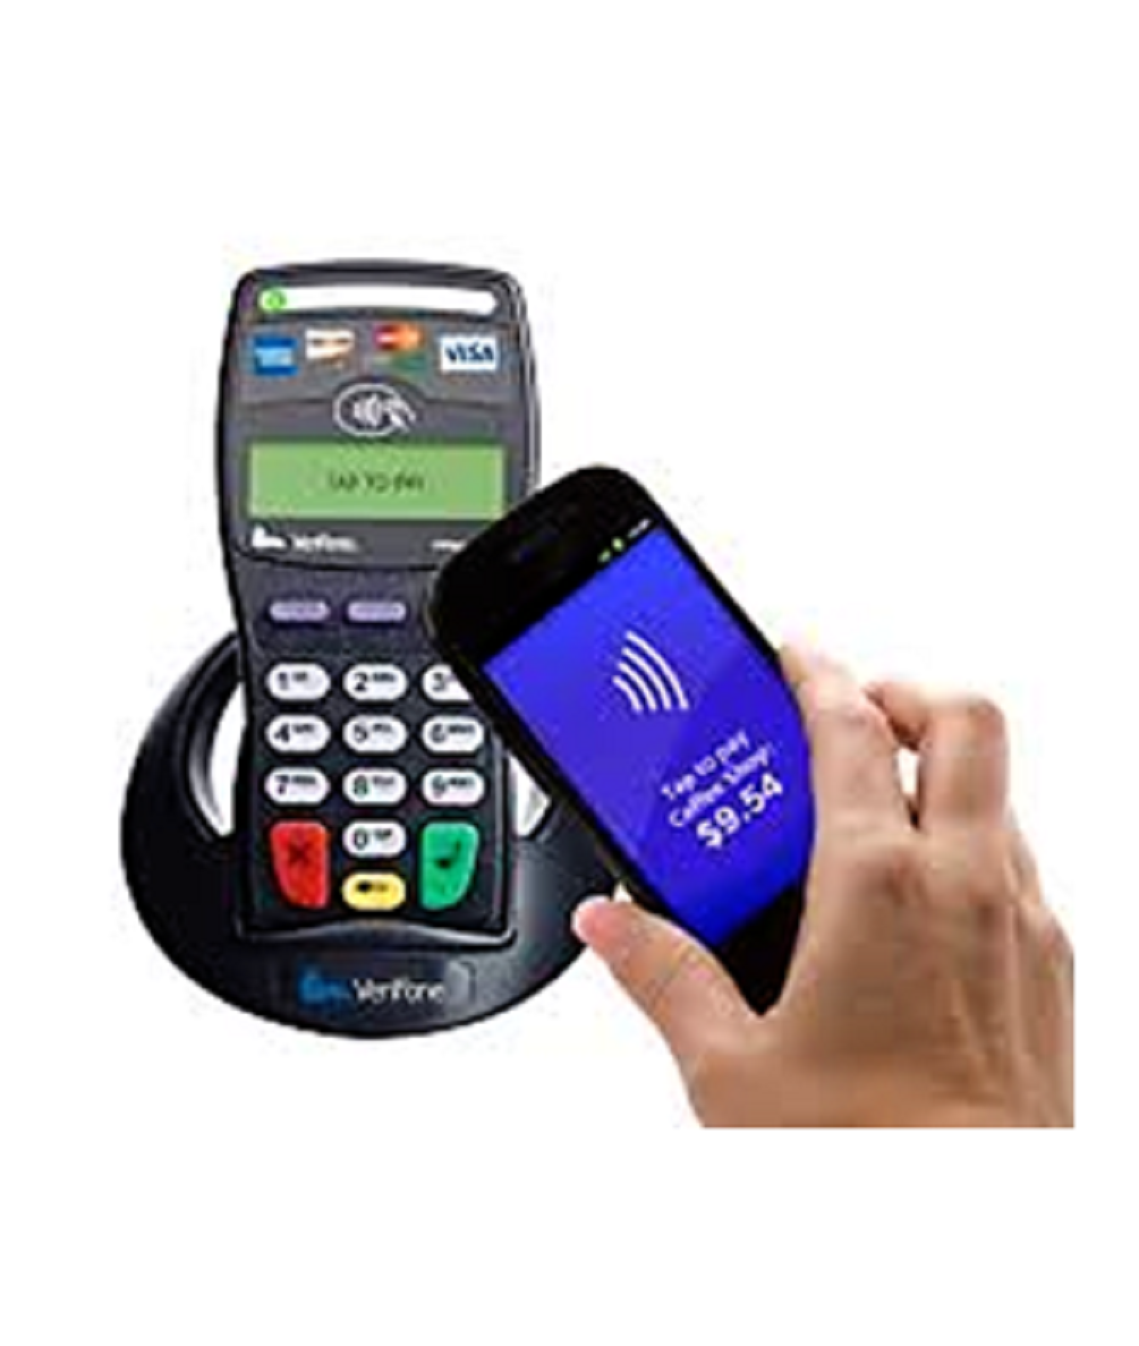 Платежные терминалы через мобильный телефон